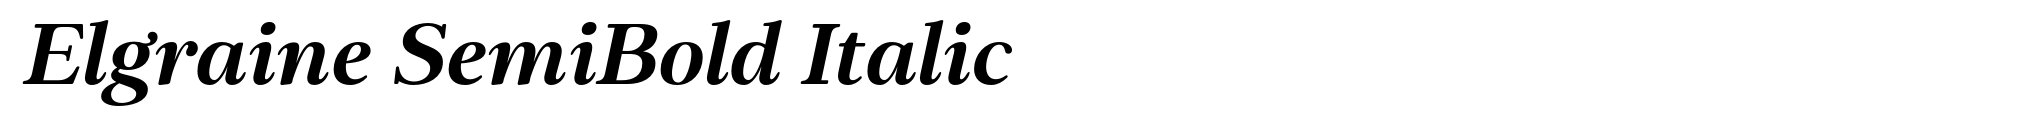 Elgraine SemiBold Italic image